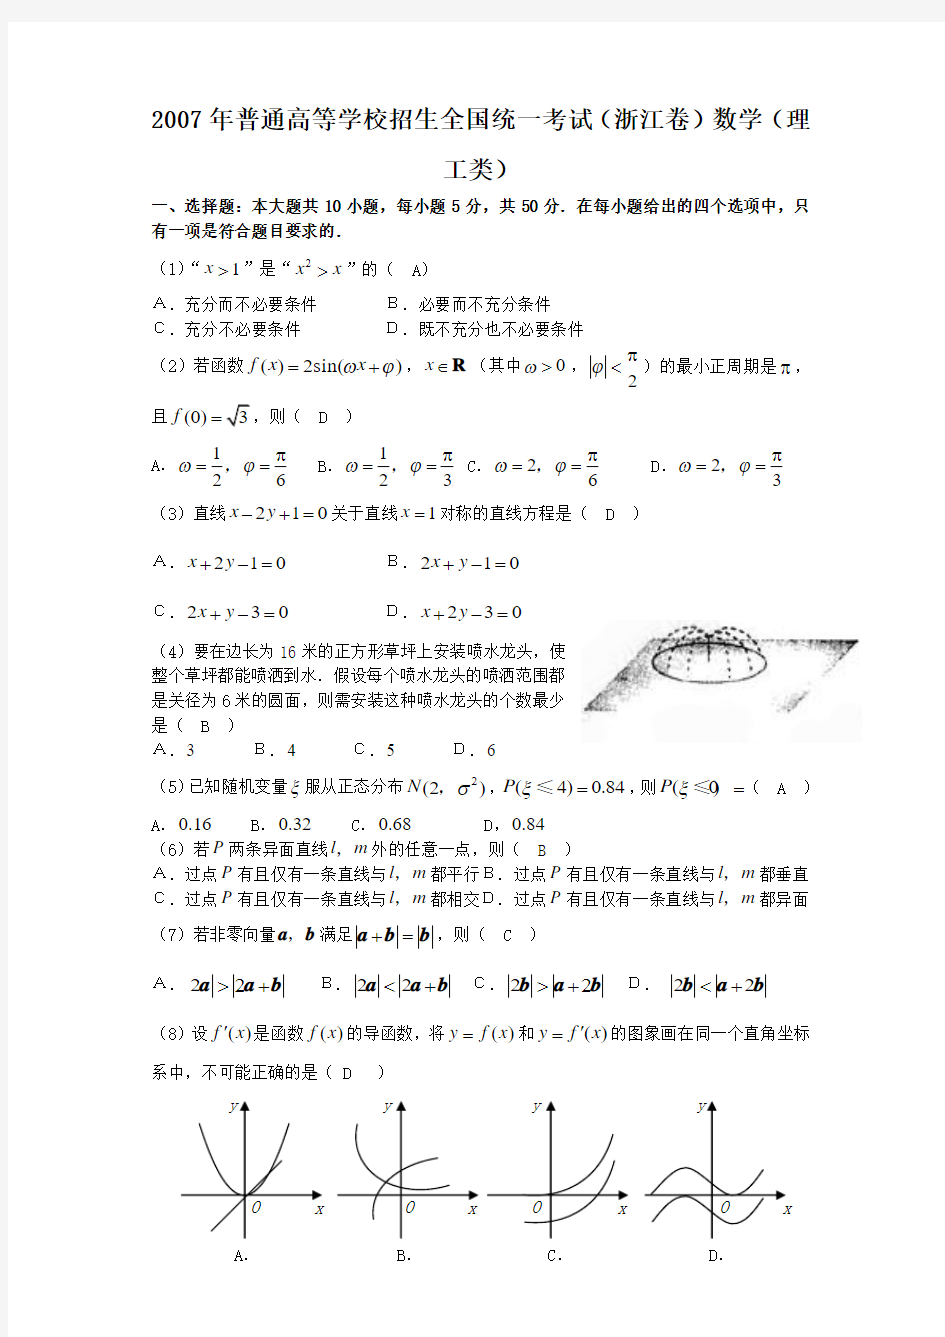 浙江省数学(理科)-2007年高考试题解析